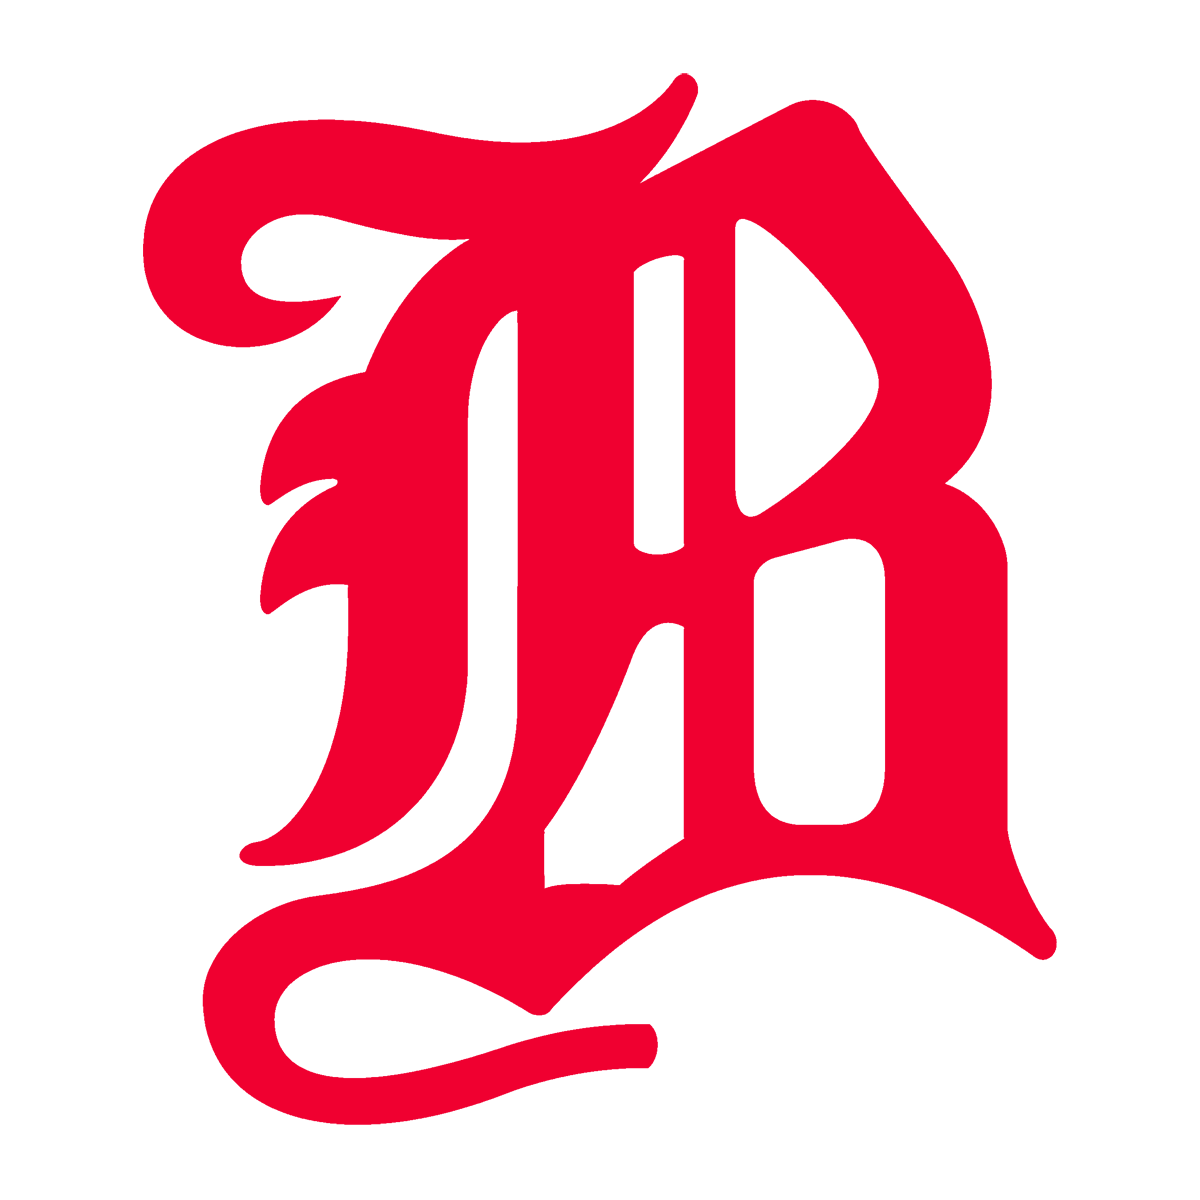 Boston Beaneaters Logo 1900